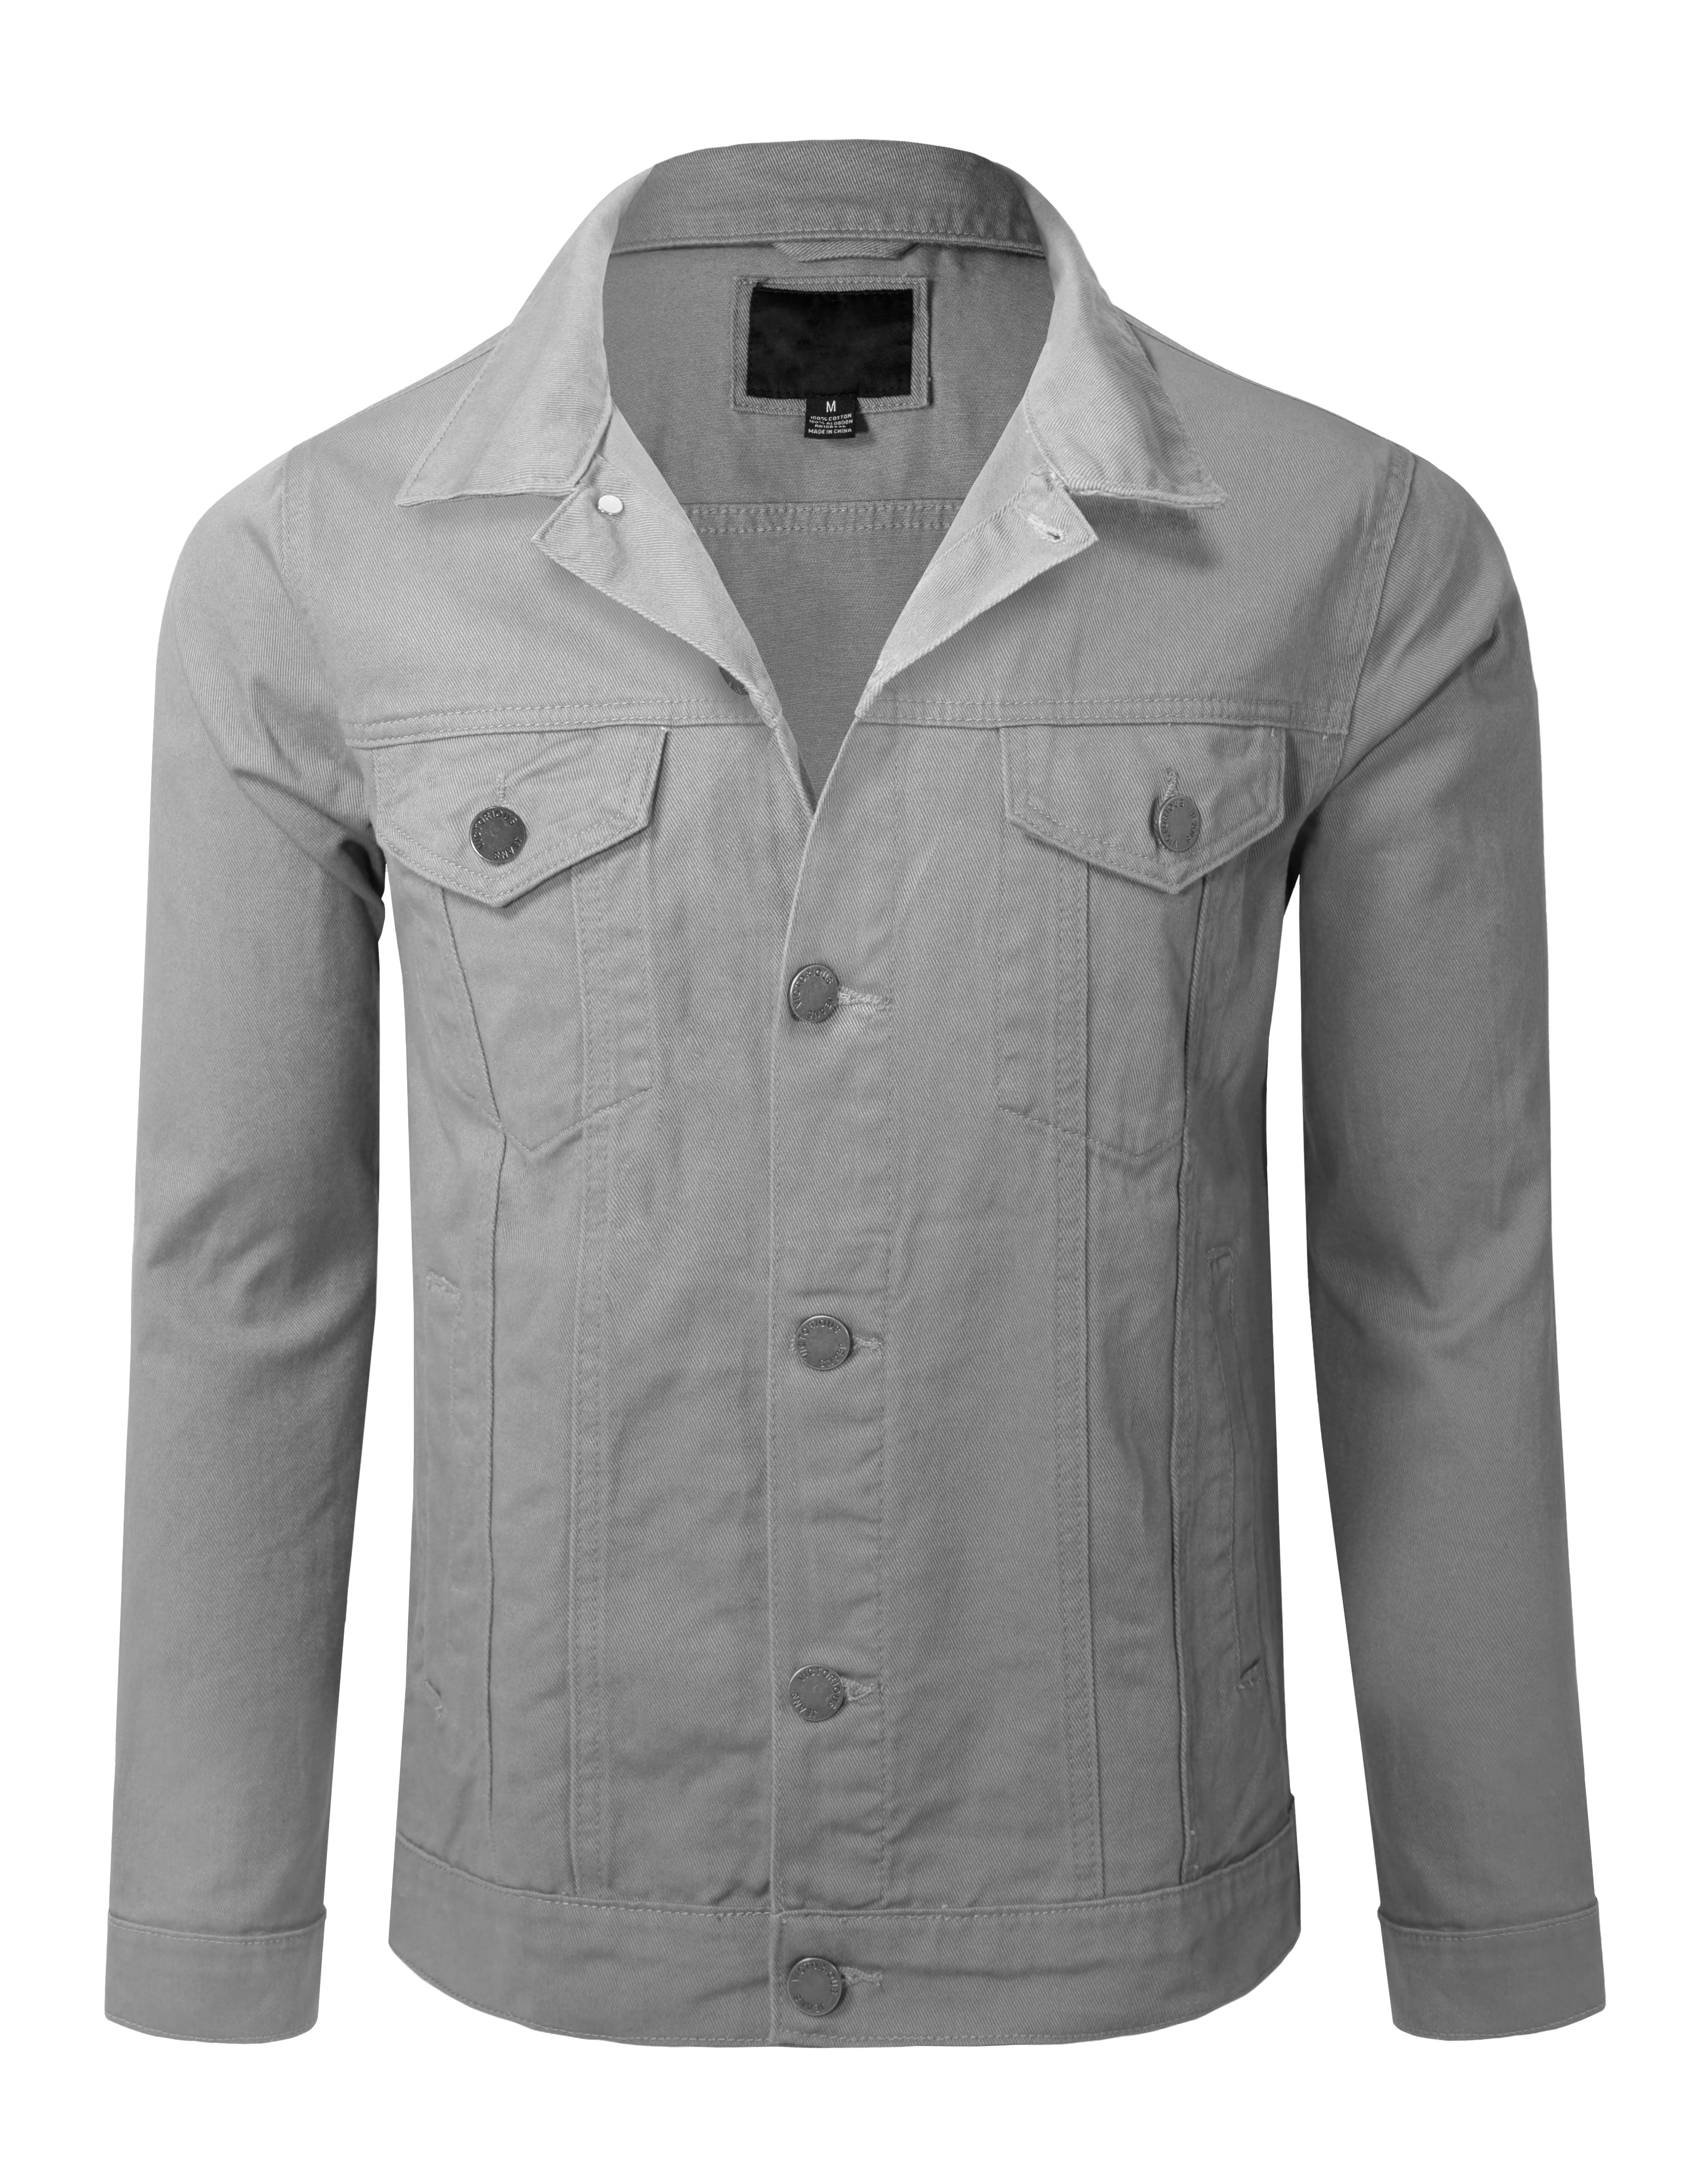 Allsense Men's Plain Denim Jacket Jean Button Up Color Lt Grey M ...